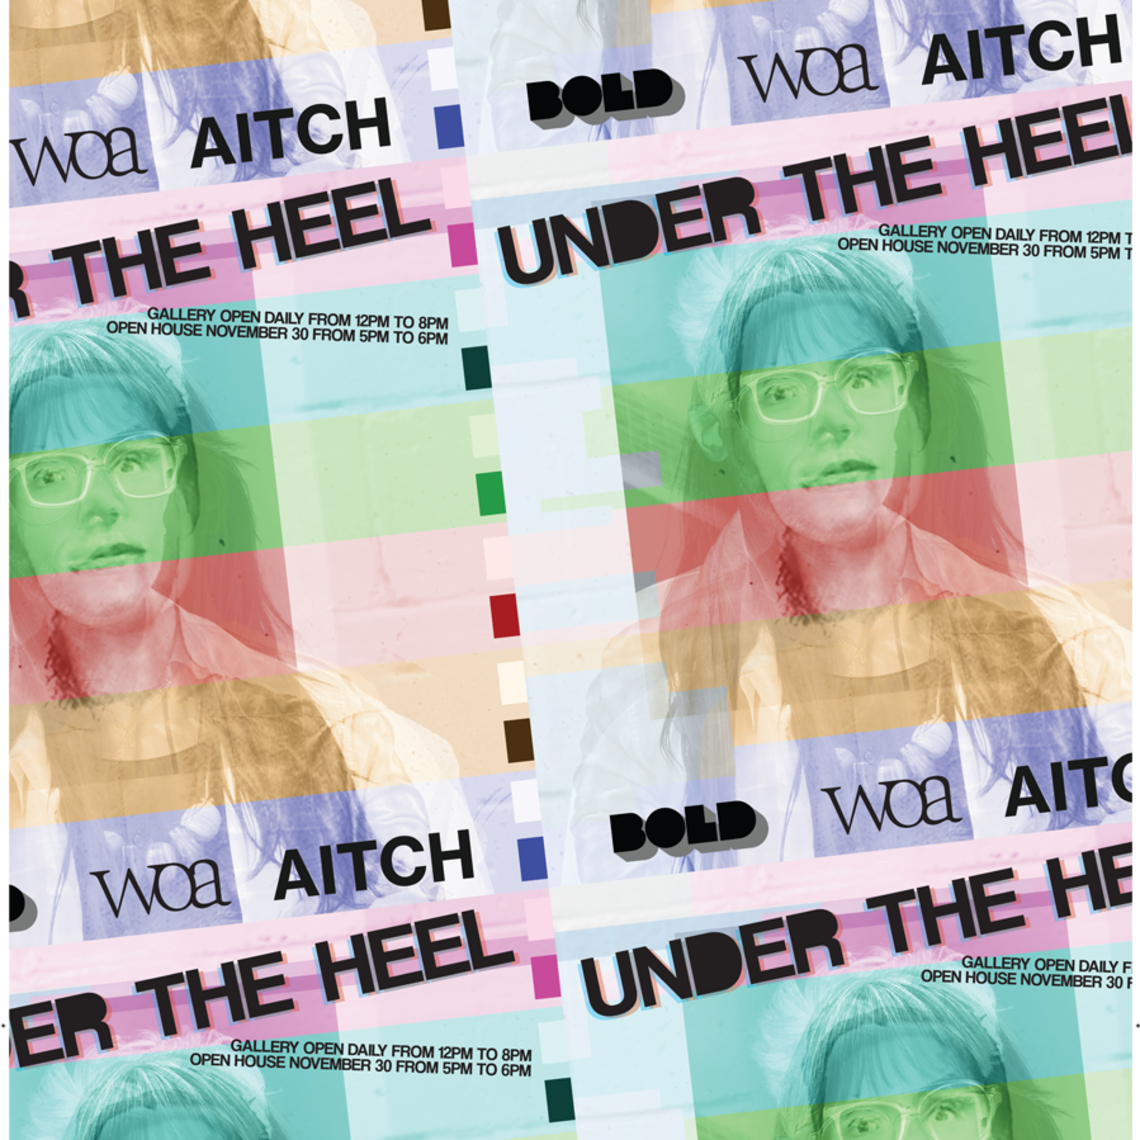 Under The Heel